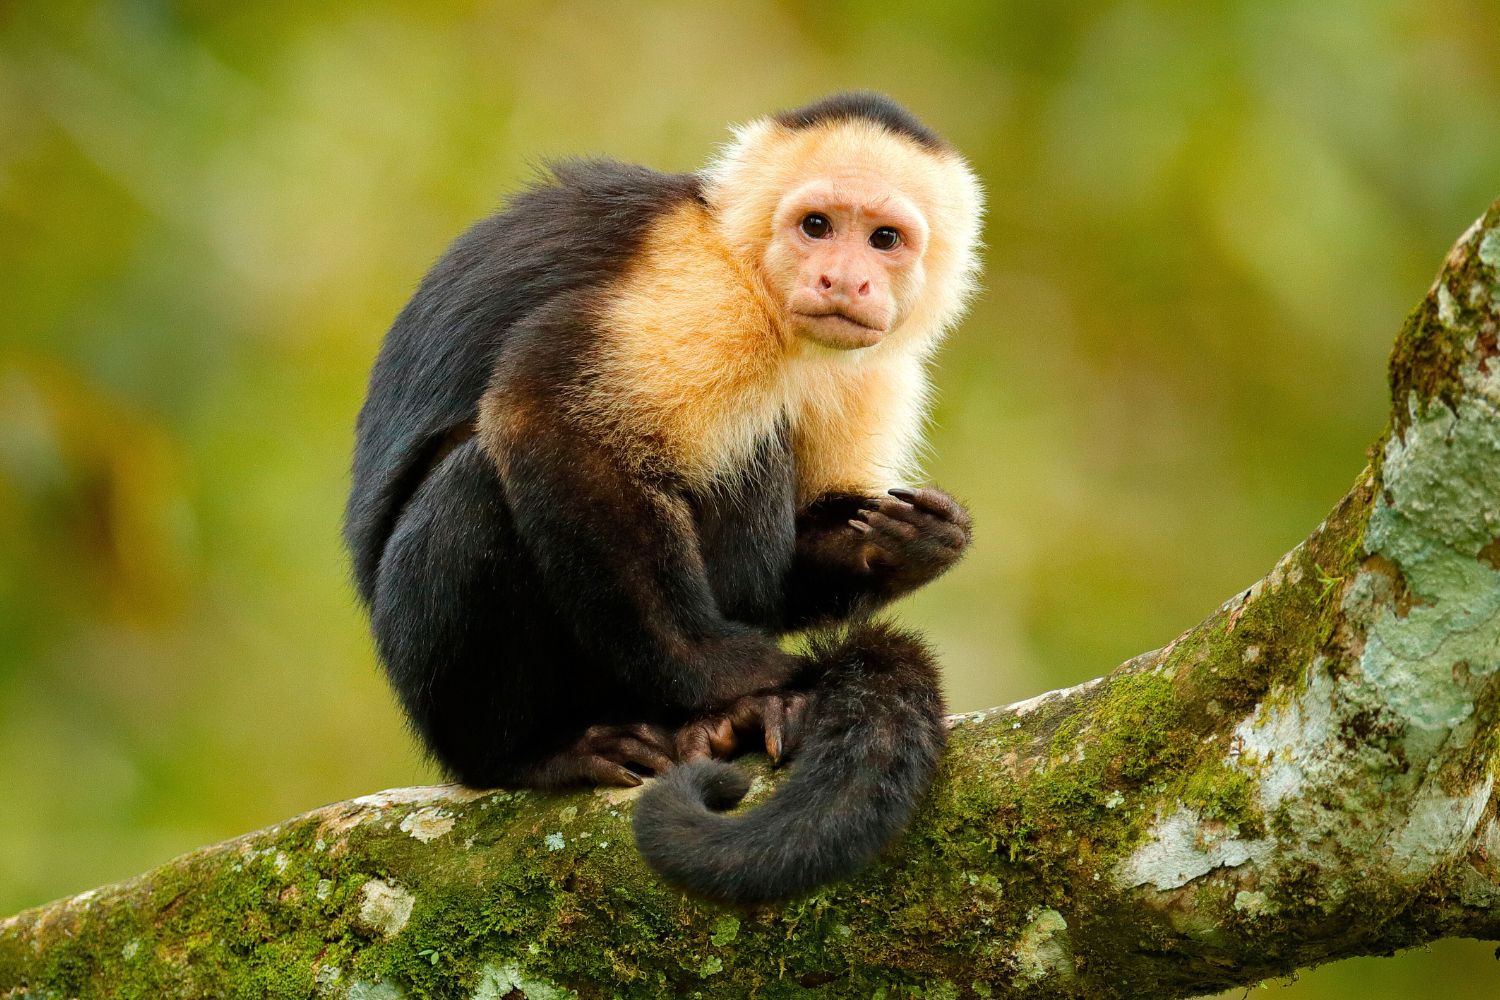 4. Mono capuchino